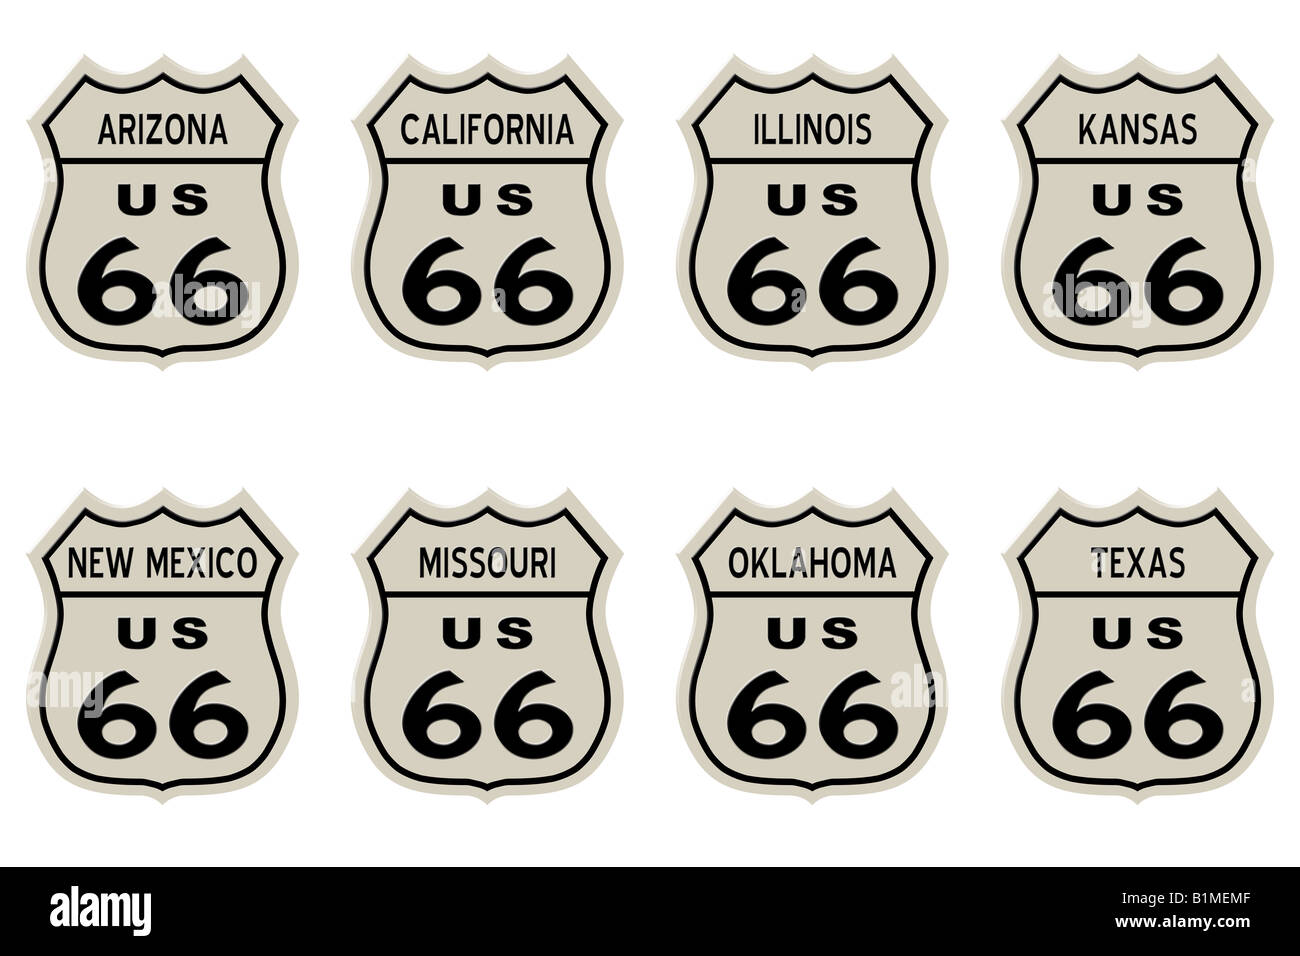 Die Route 66 Schilder, auf weißen Hintergrund isoliert. Alle 8 Staaten  Stockfotografie - Alamy